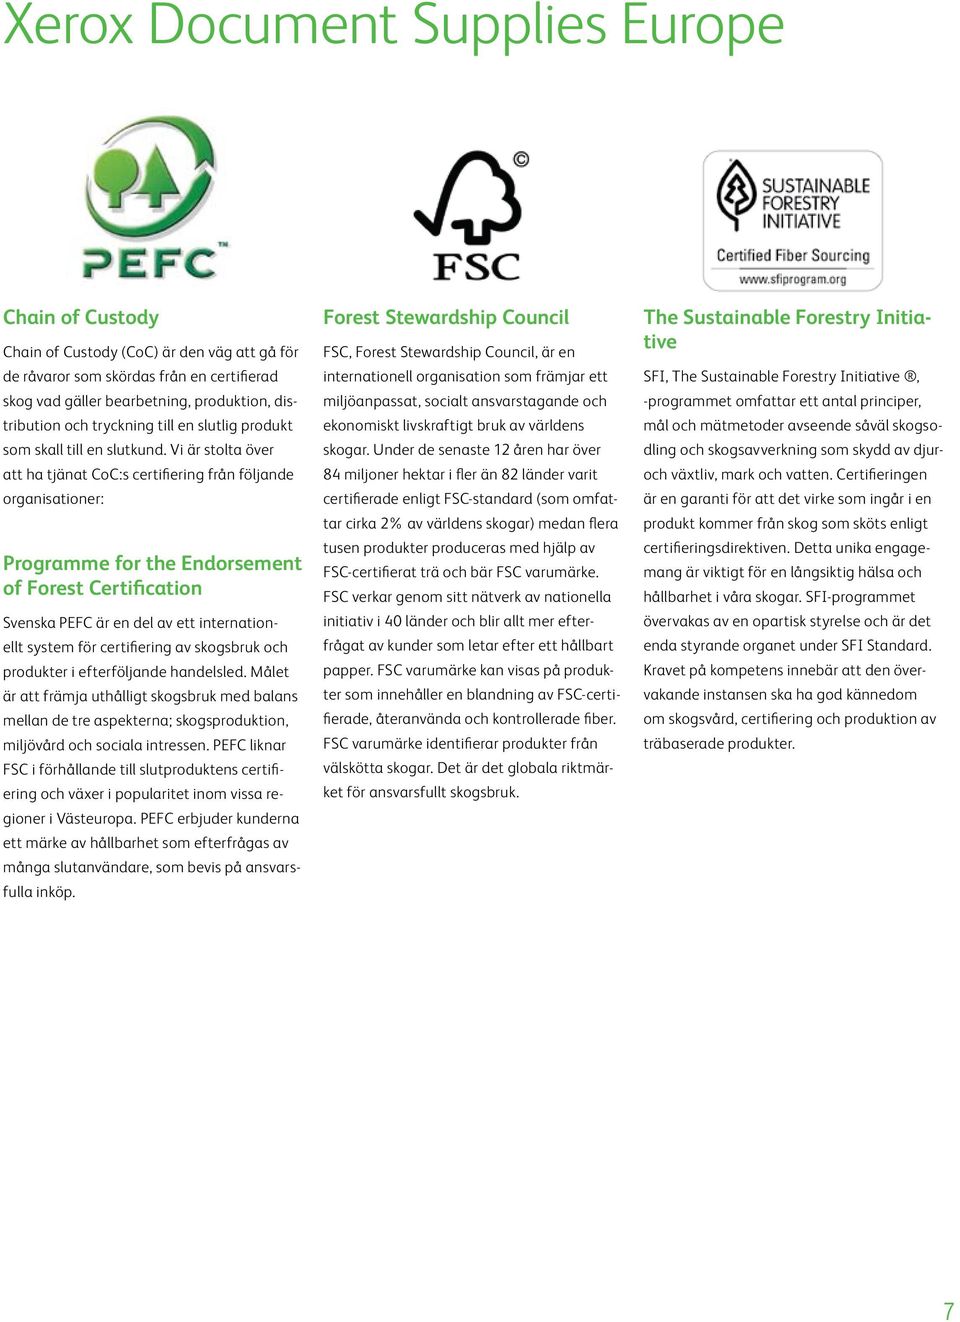 Vi är stolta över att ha tjänat CoC:s certifiering från följande organisationer: Programme for the Endorsement of Forest Certification Svenska PEFC är en del av ett internationellt system för